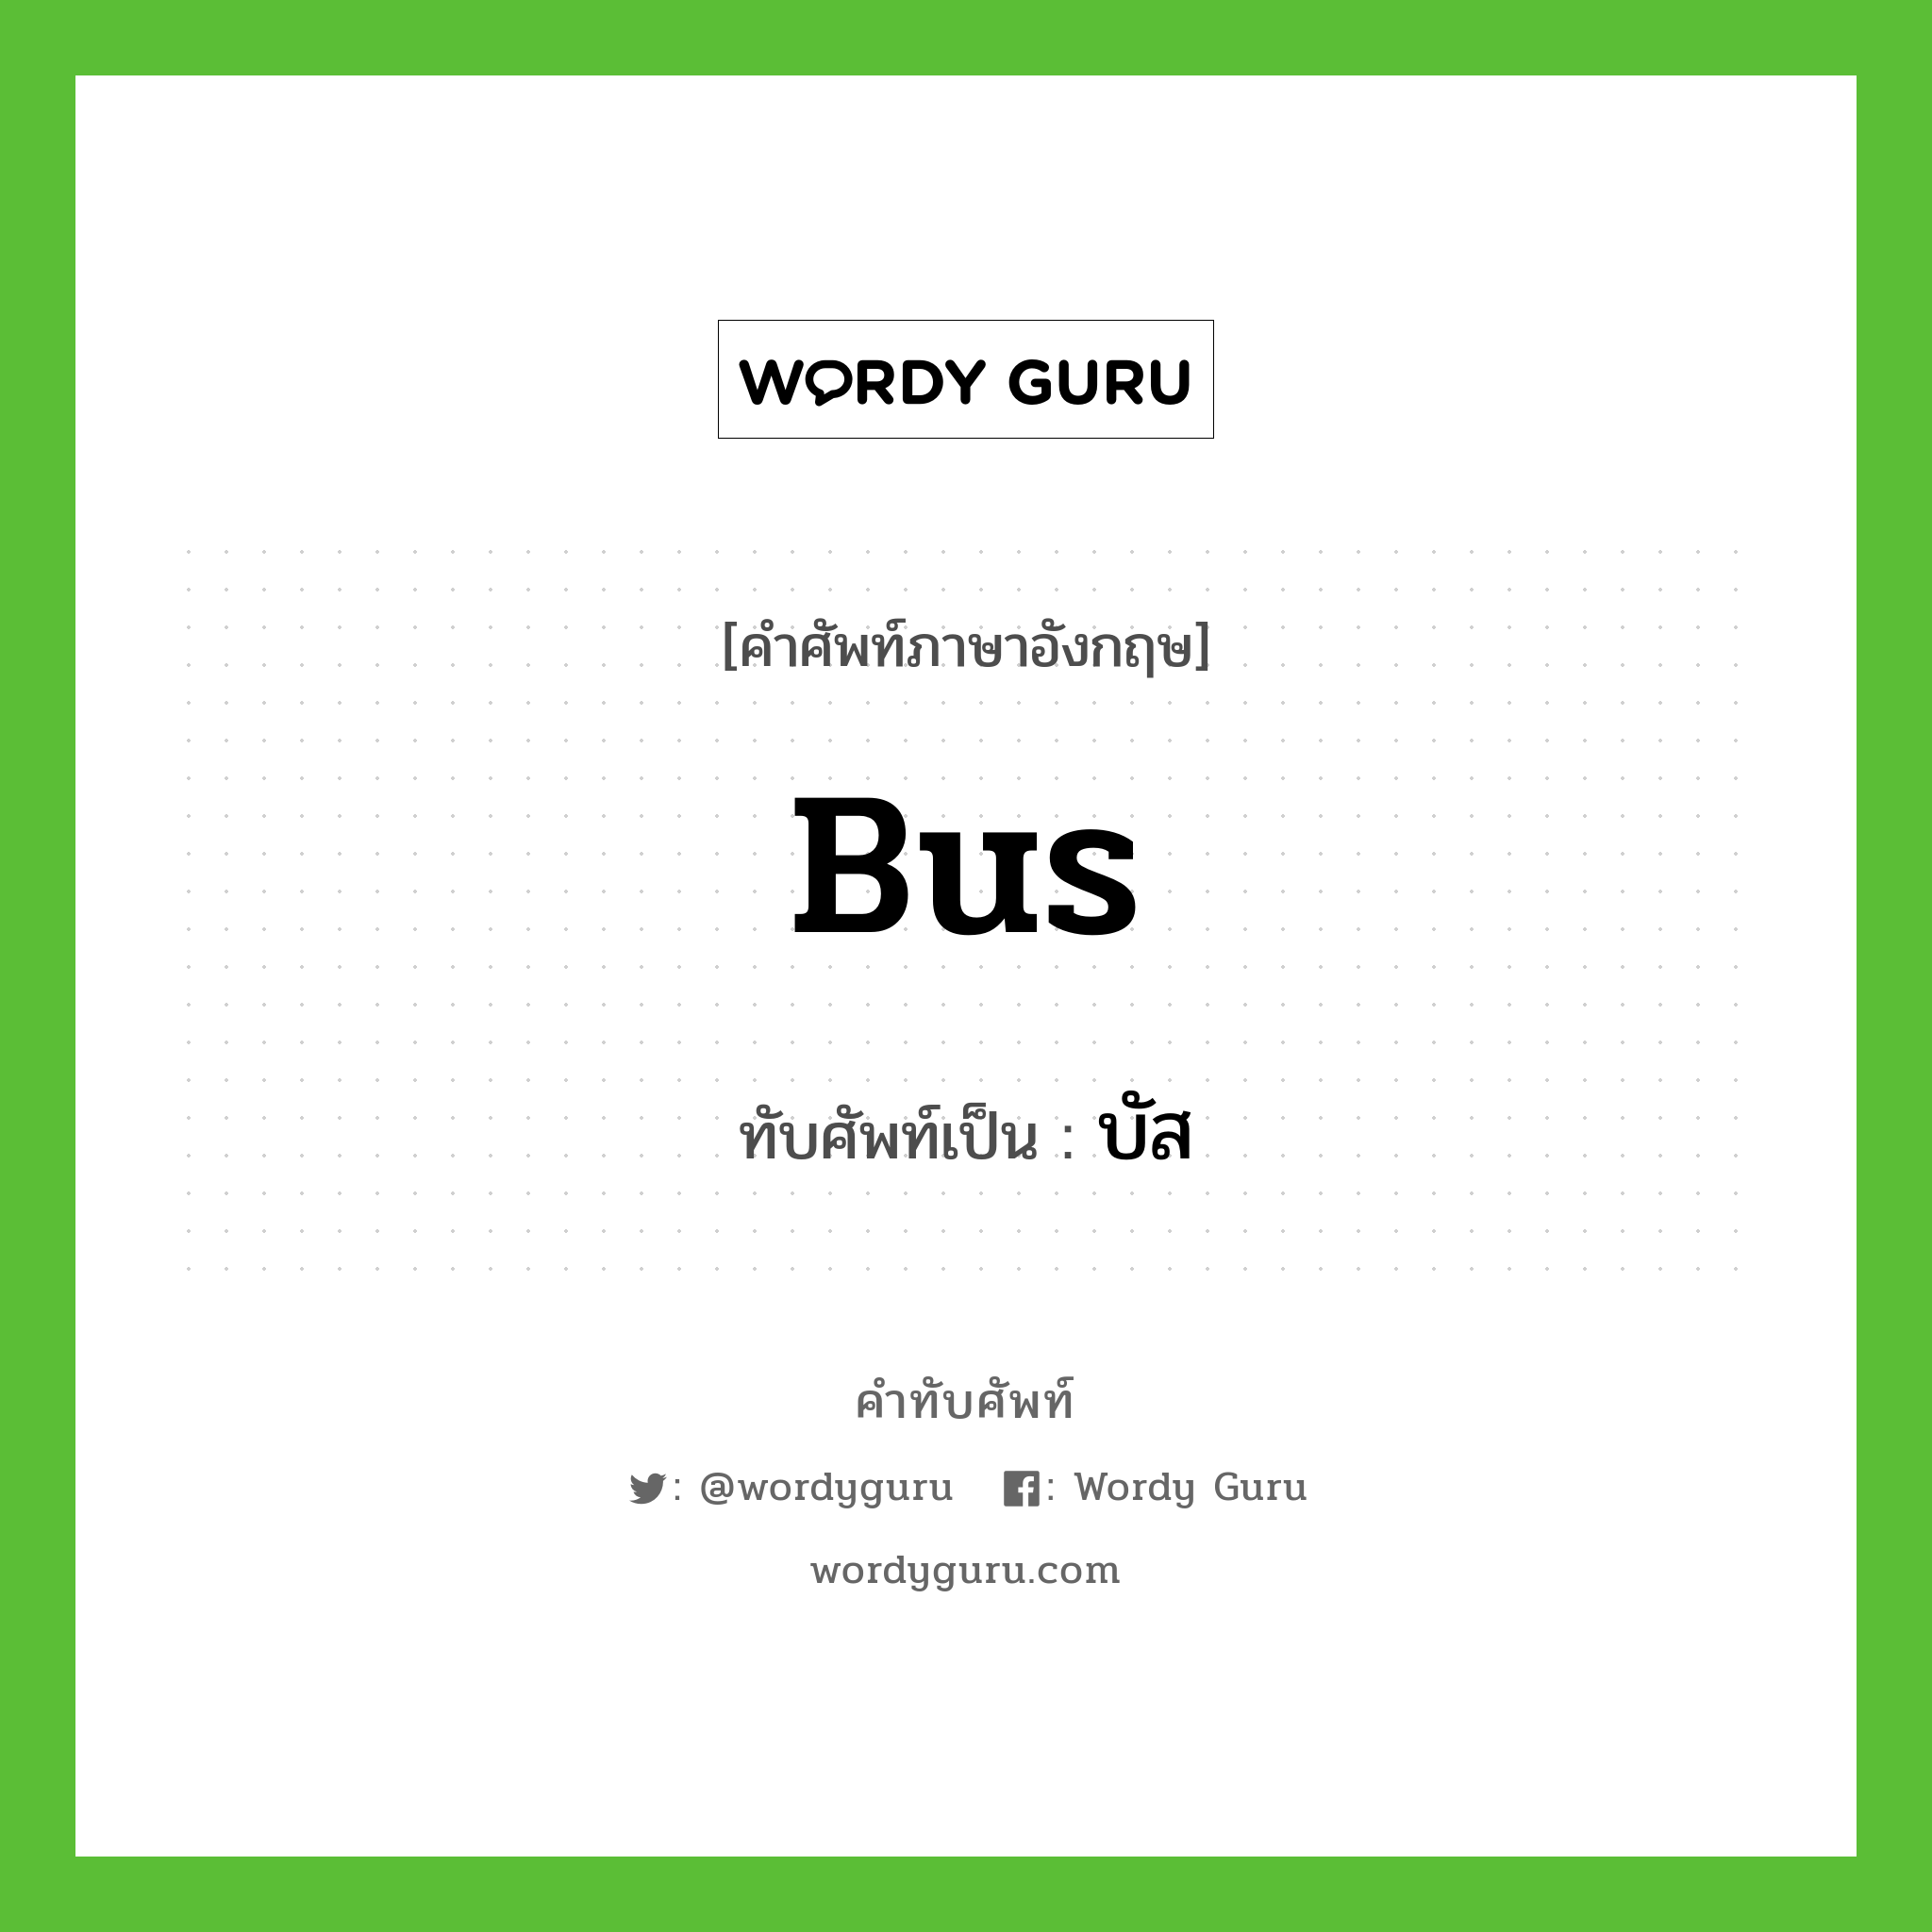 bus เขียนเป็นคำไทยว่าอะไร?, คำศัพท์ภาษาอังกฤษ bus ทับศัพท์เป็น บัส